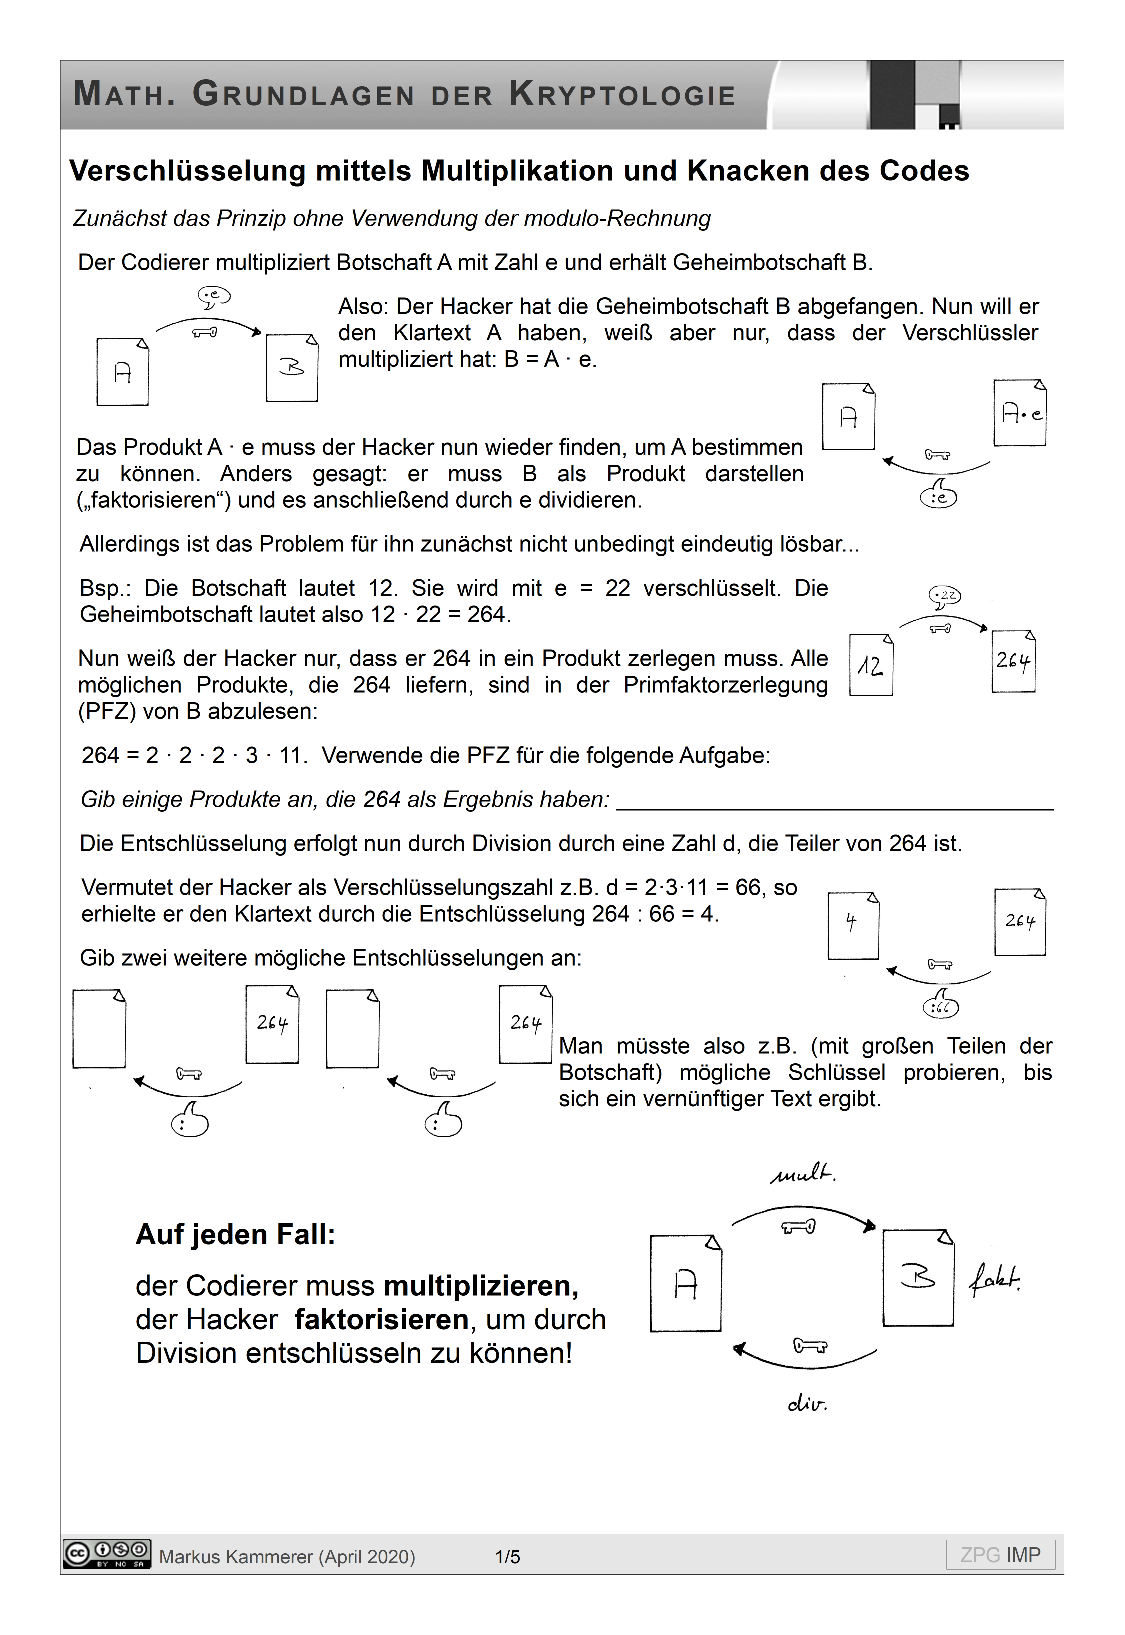 Verschlüsselung mittels modularer Multiplikation, Seite 1